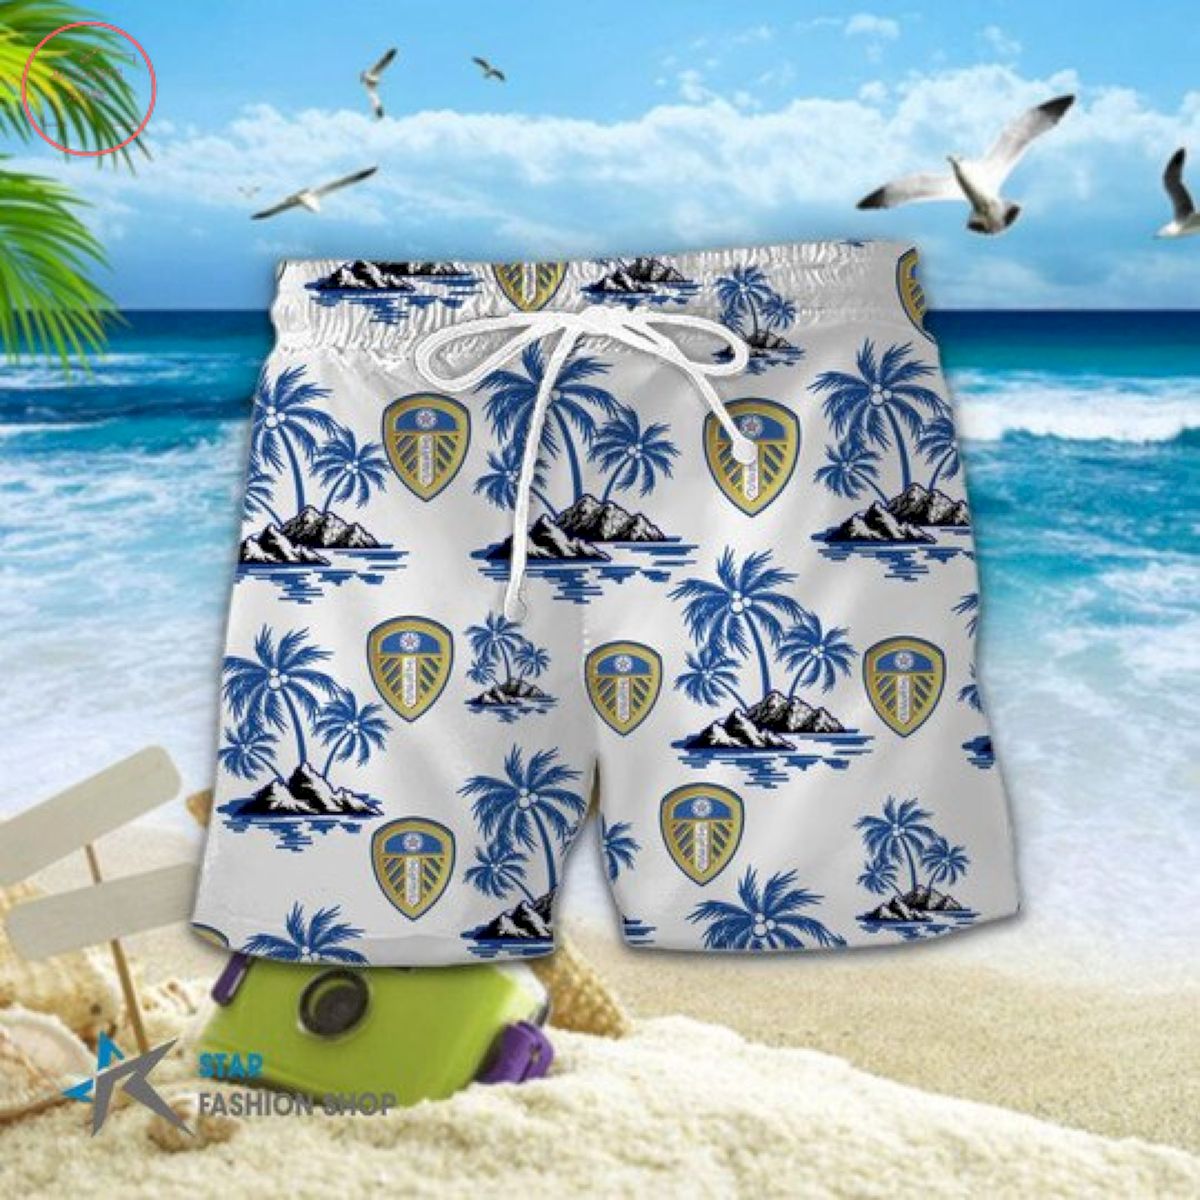 EPL Leeds United Floral Hawaiian Shirts and Shorts